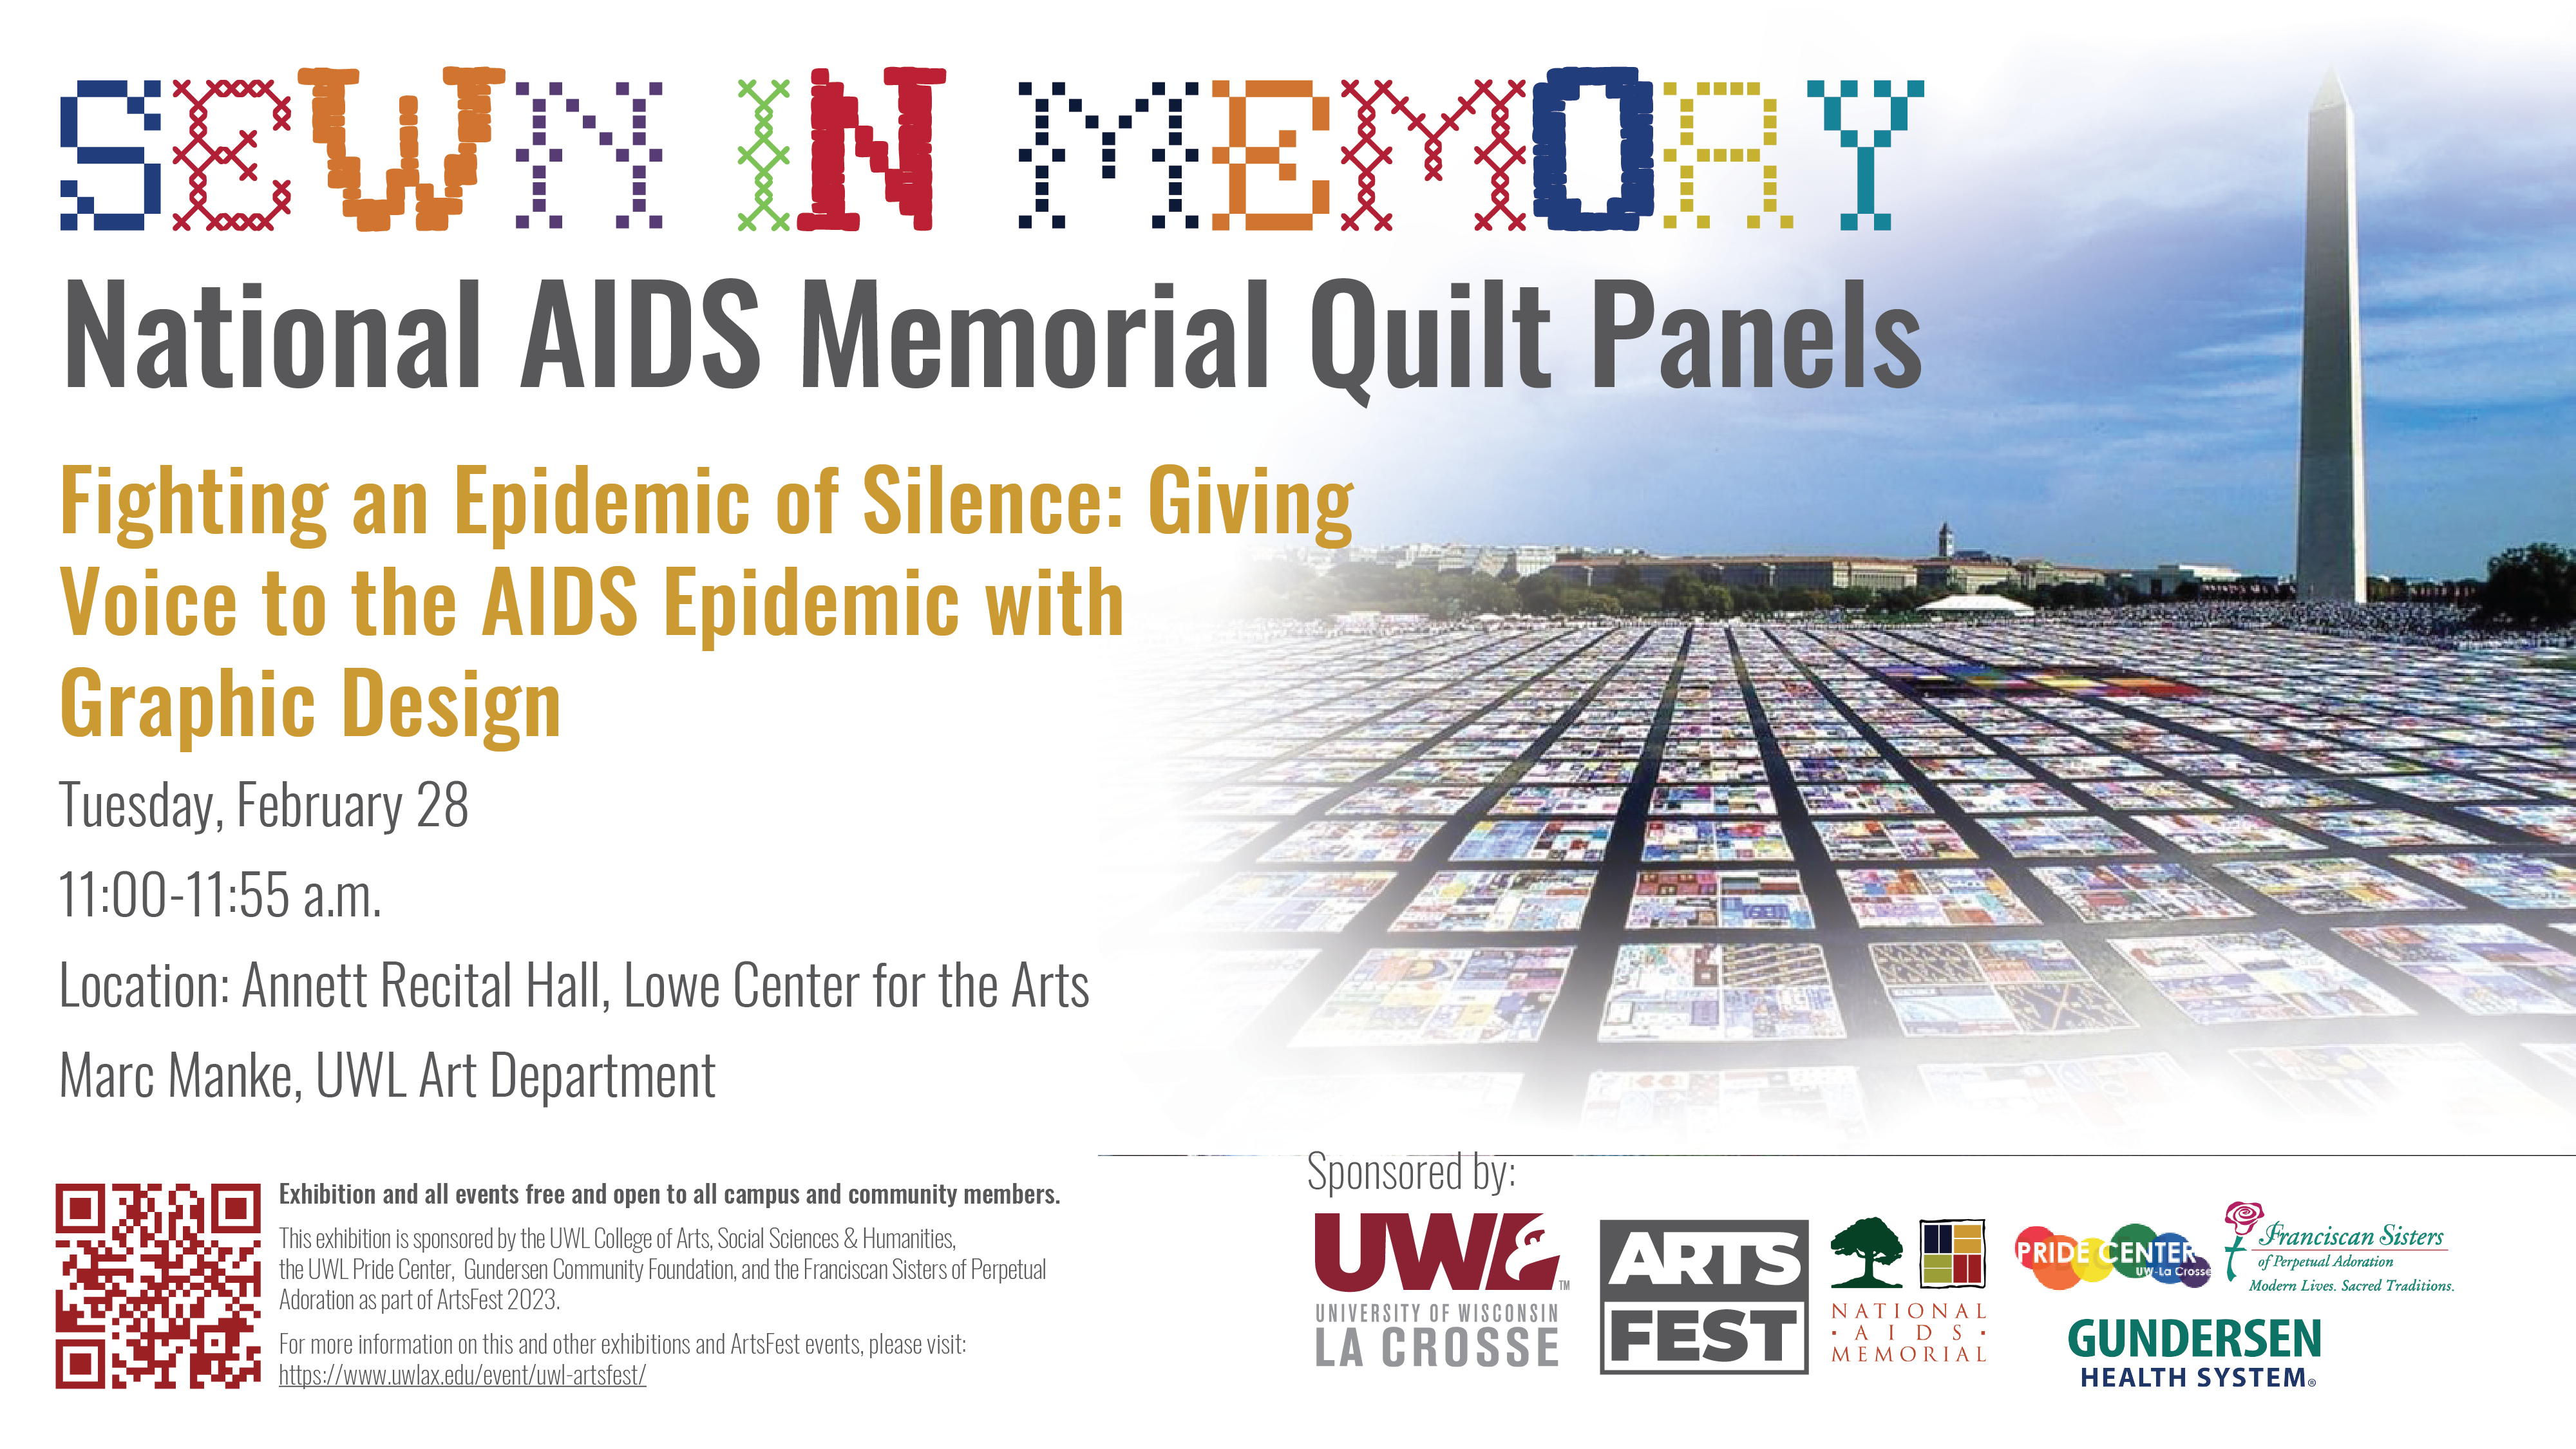 AIDS Quilt event details